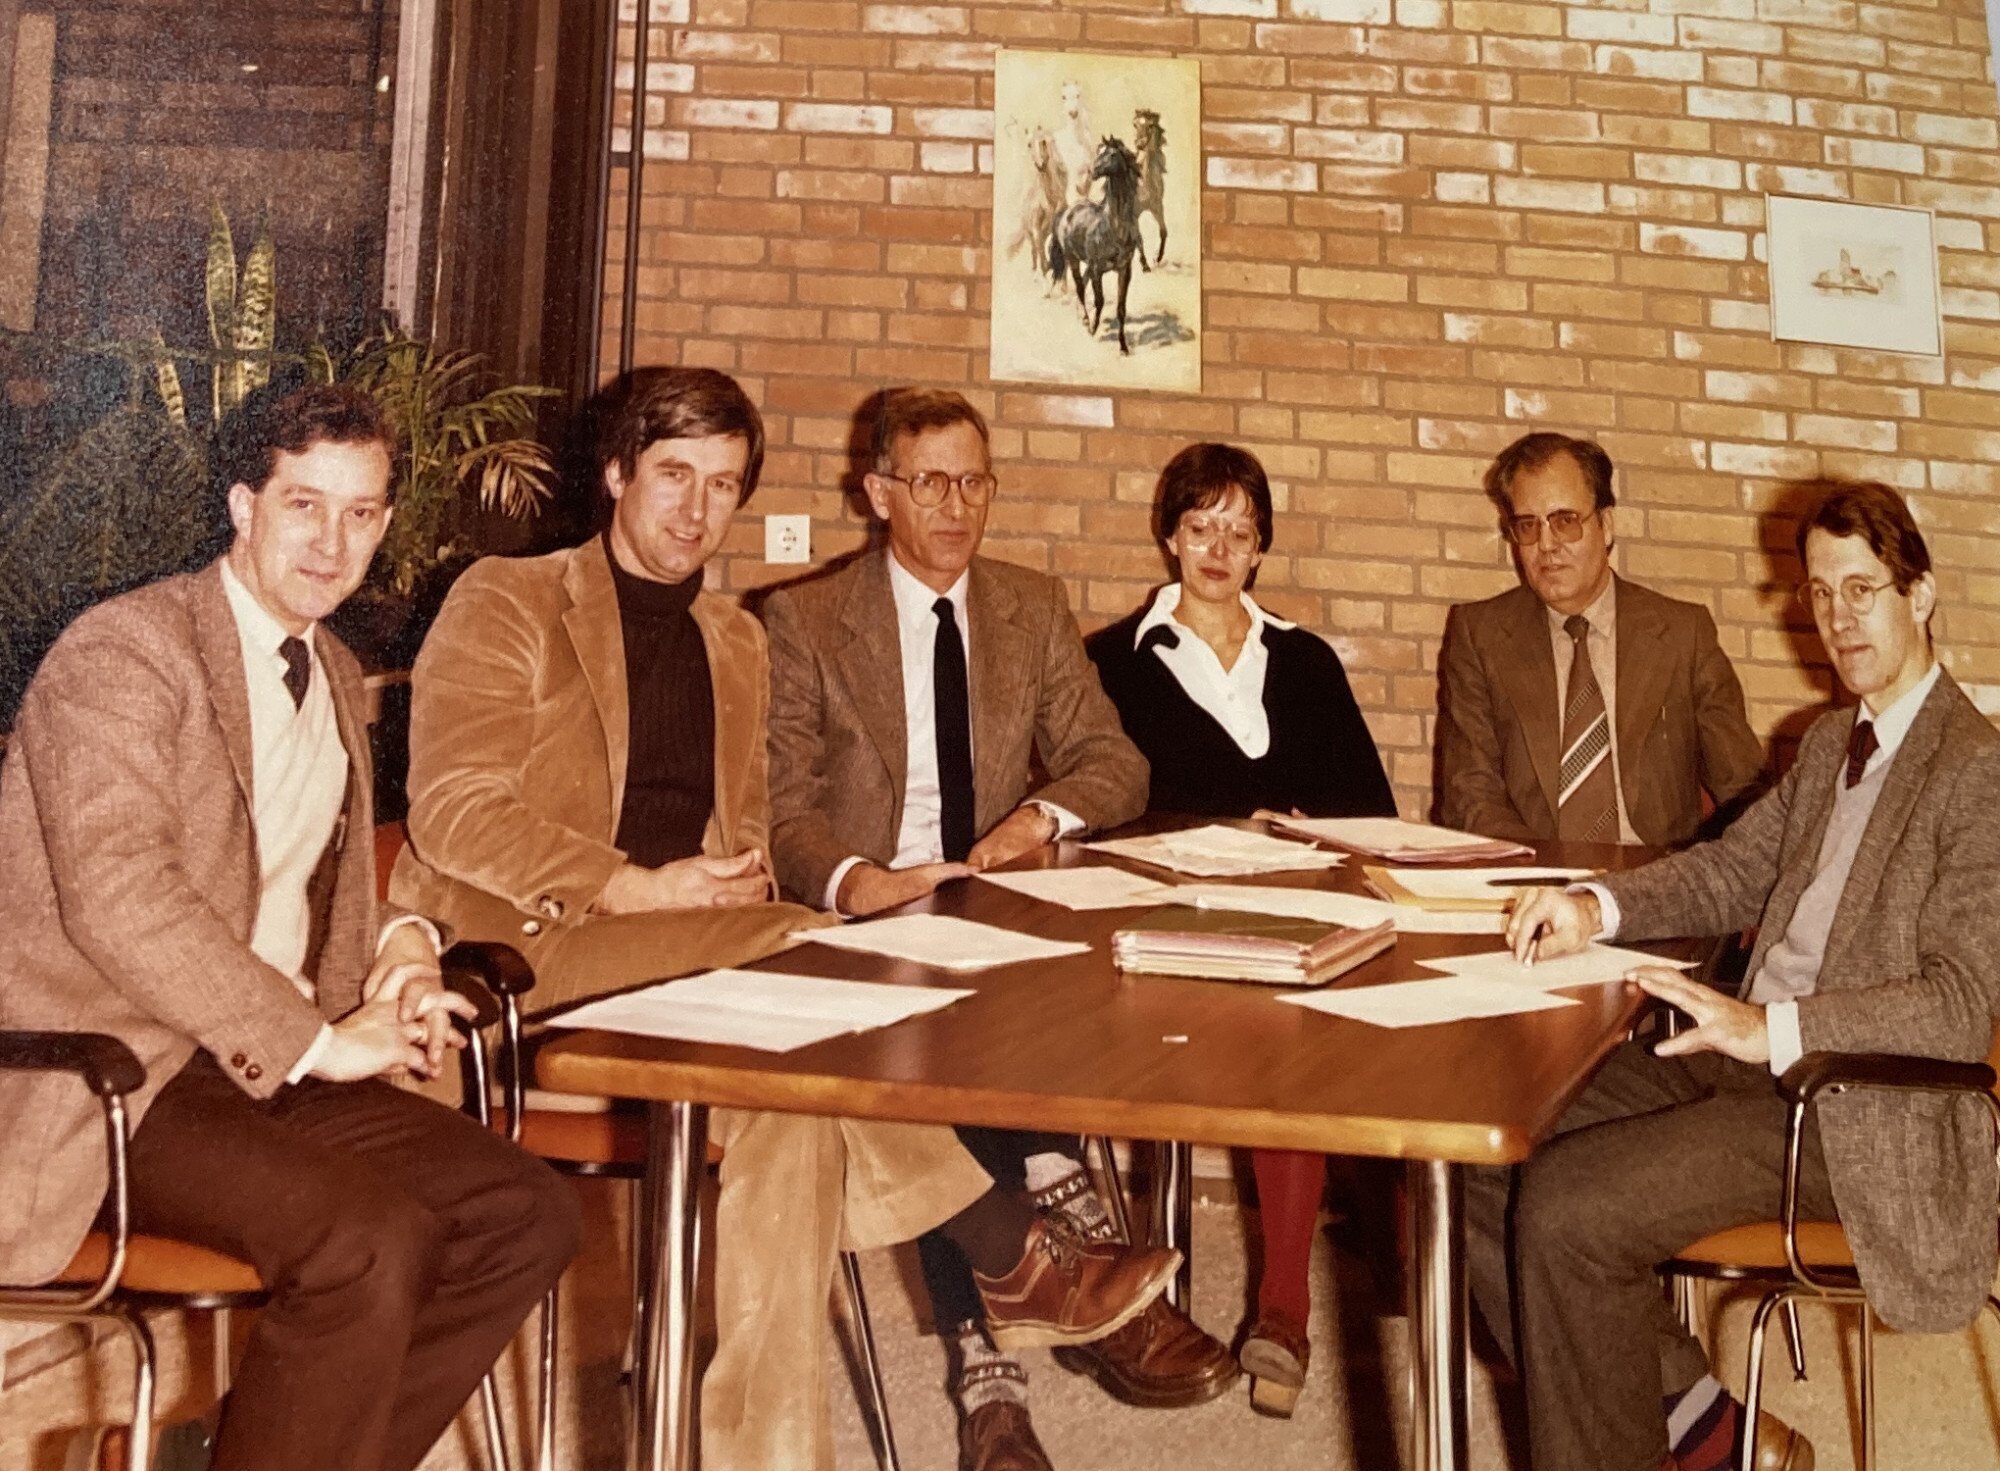 1982 Management team